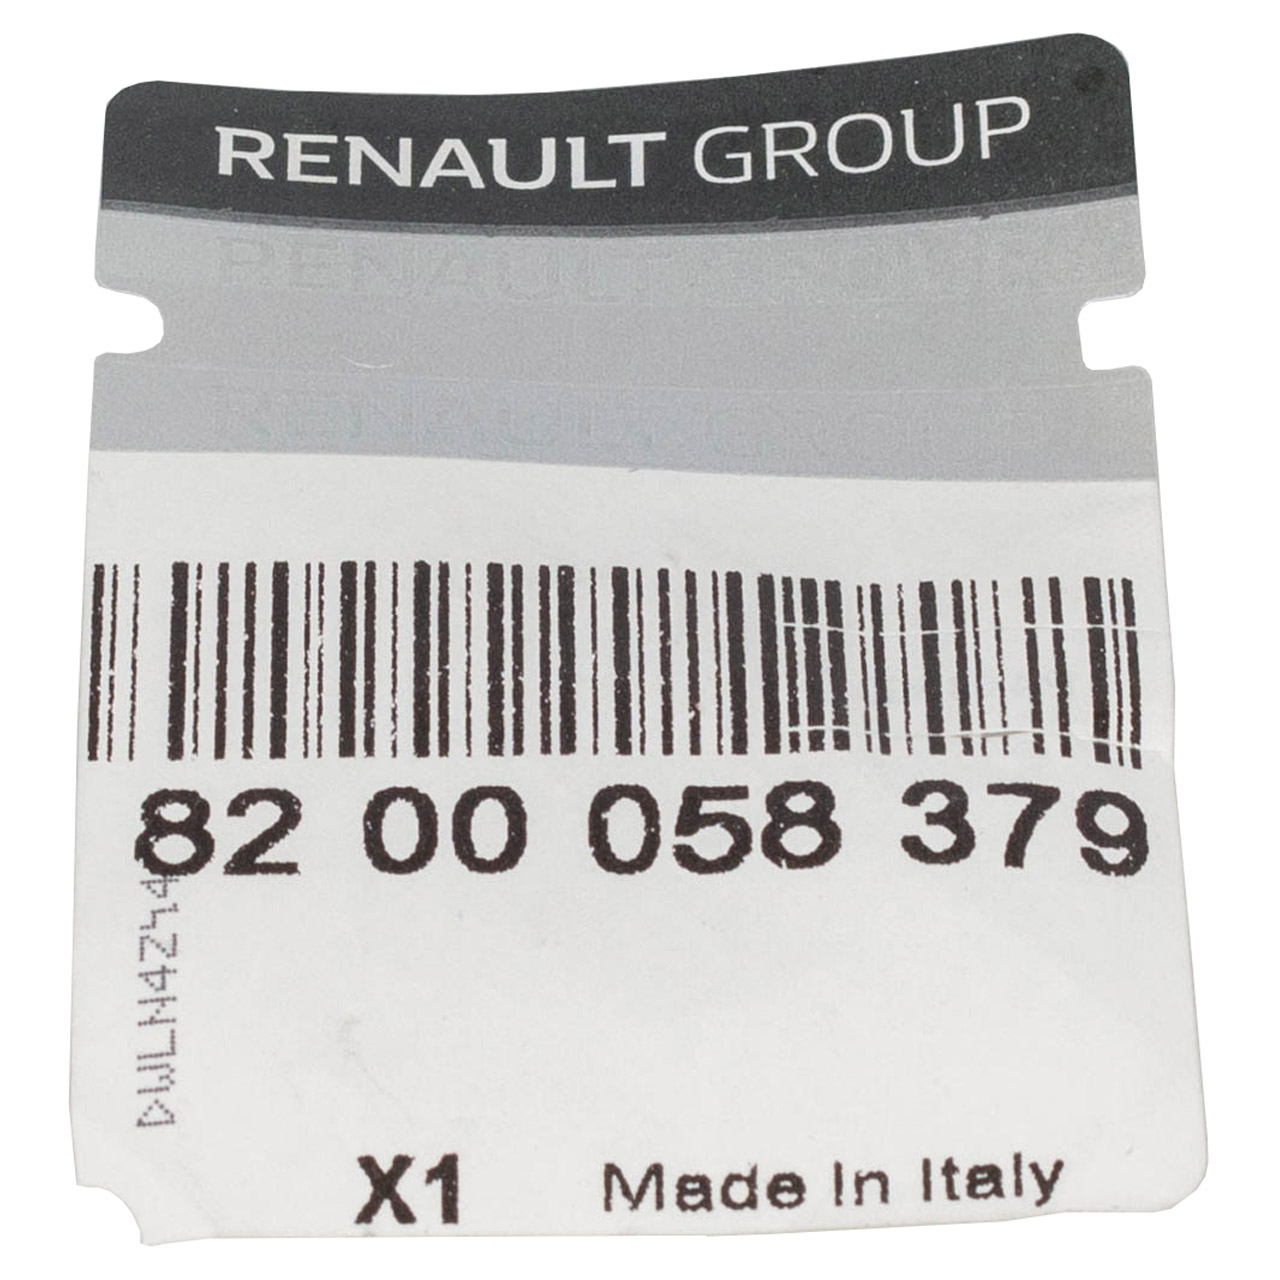 ORIGINAL Renault Einspritzventil Laguna 2 Megane 2 Scenic 2 Vel Satis 2.0 8200058379